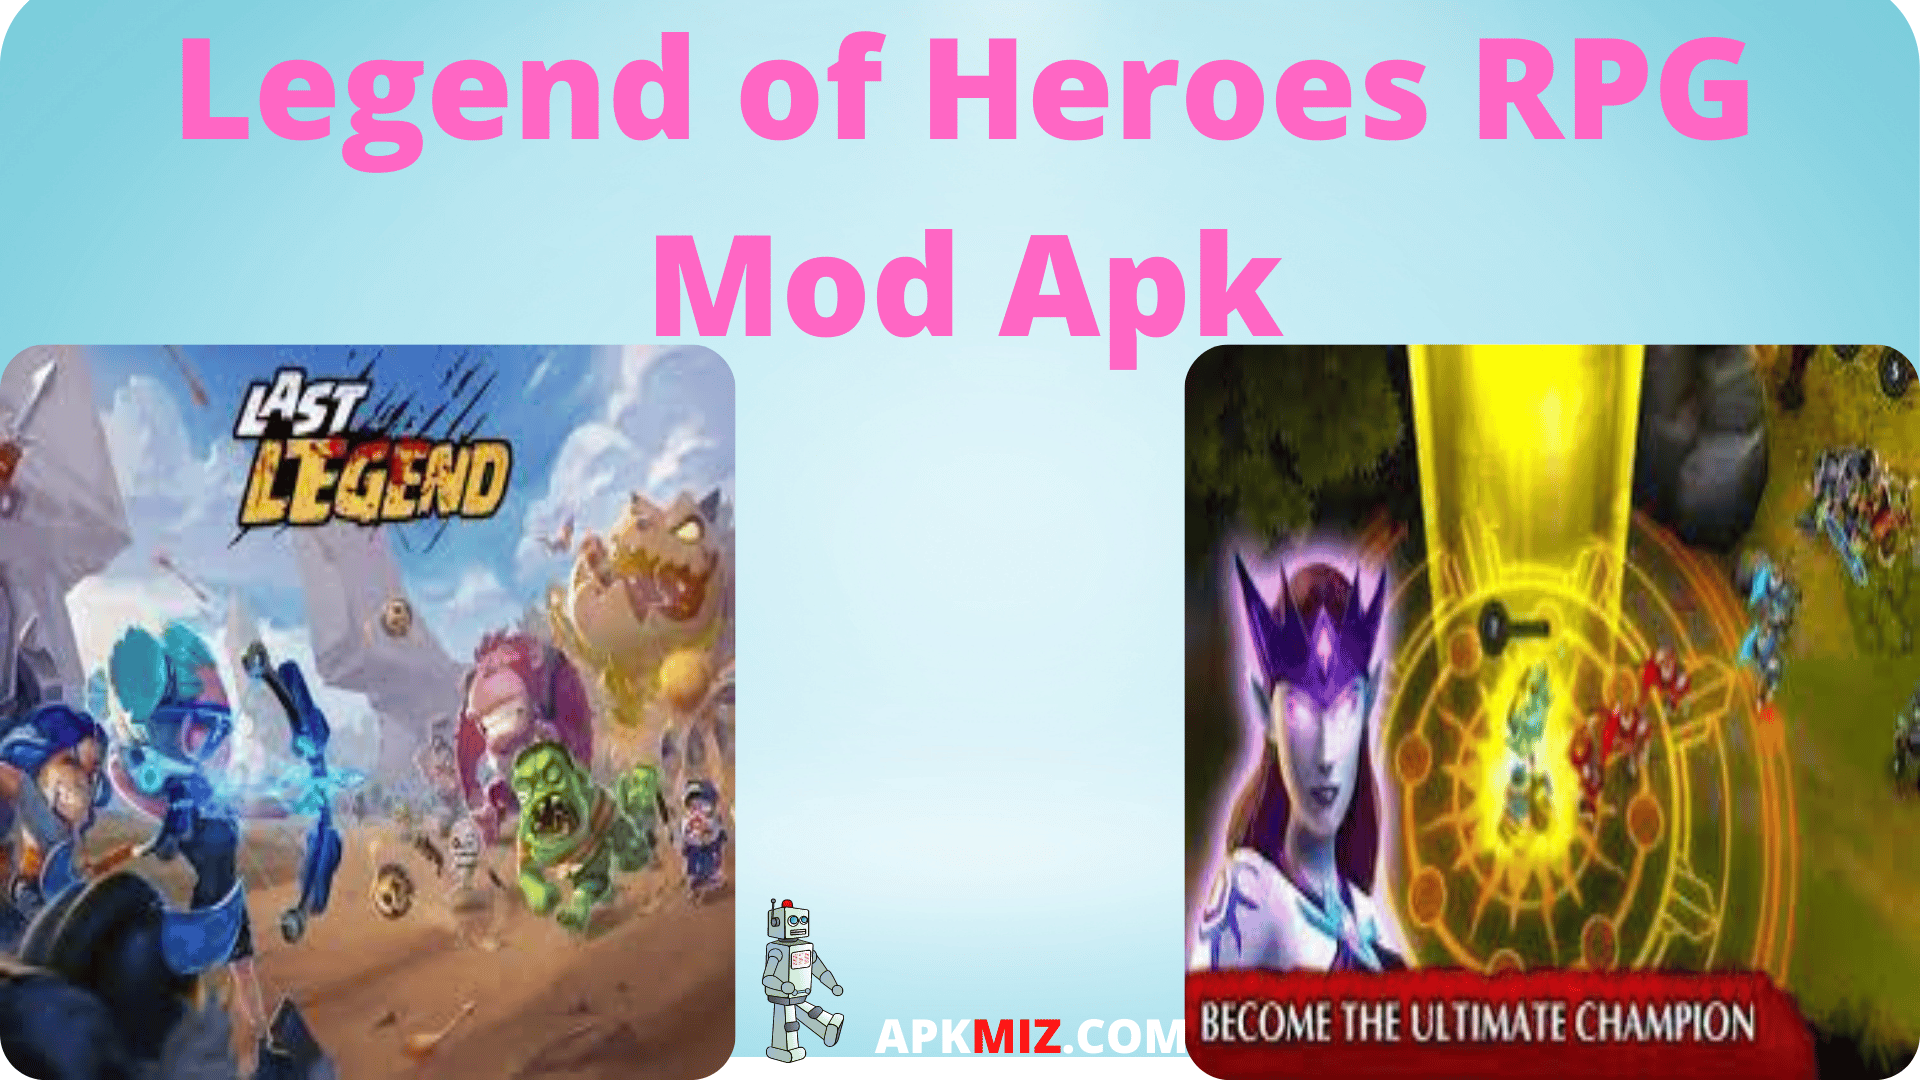 Legend of Heroes RPG Mod Apk